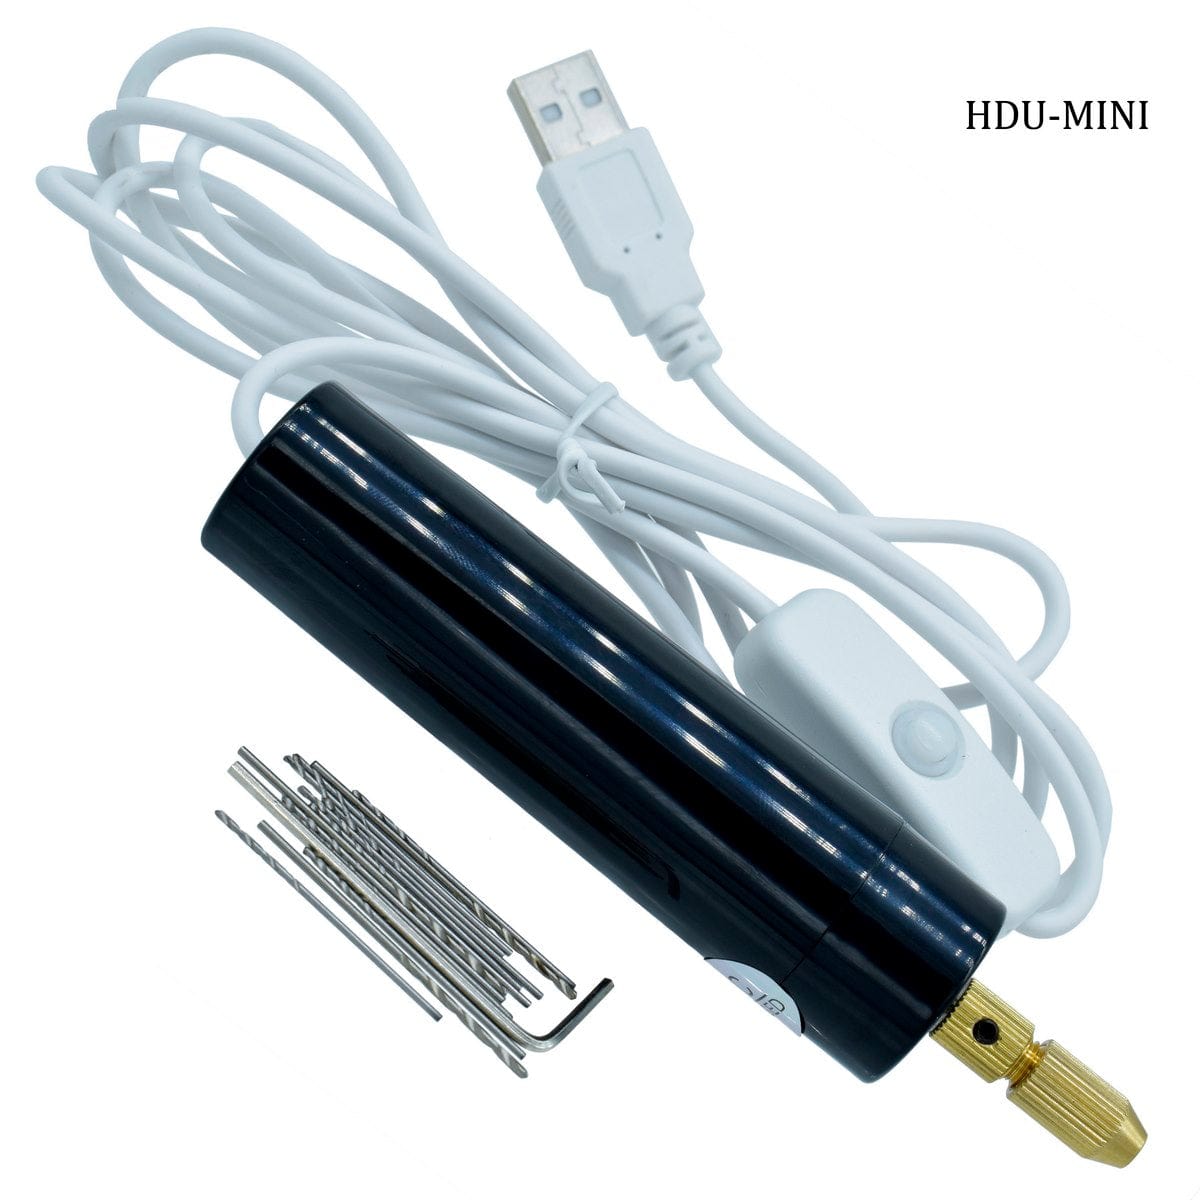 jags-mumbai Tools Hand Drill And Tool USB MINI HDU-MINI